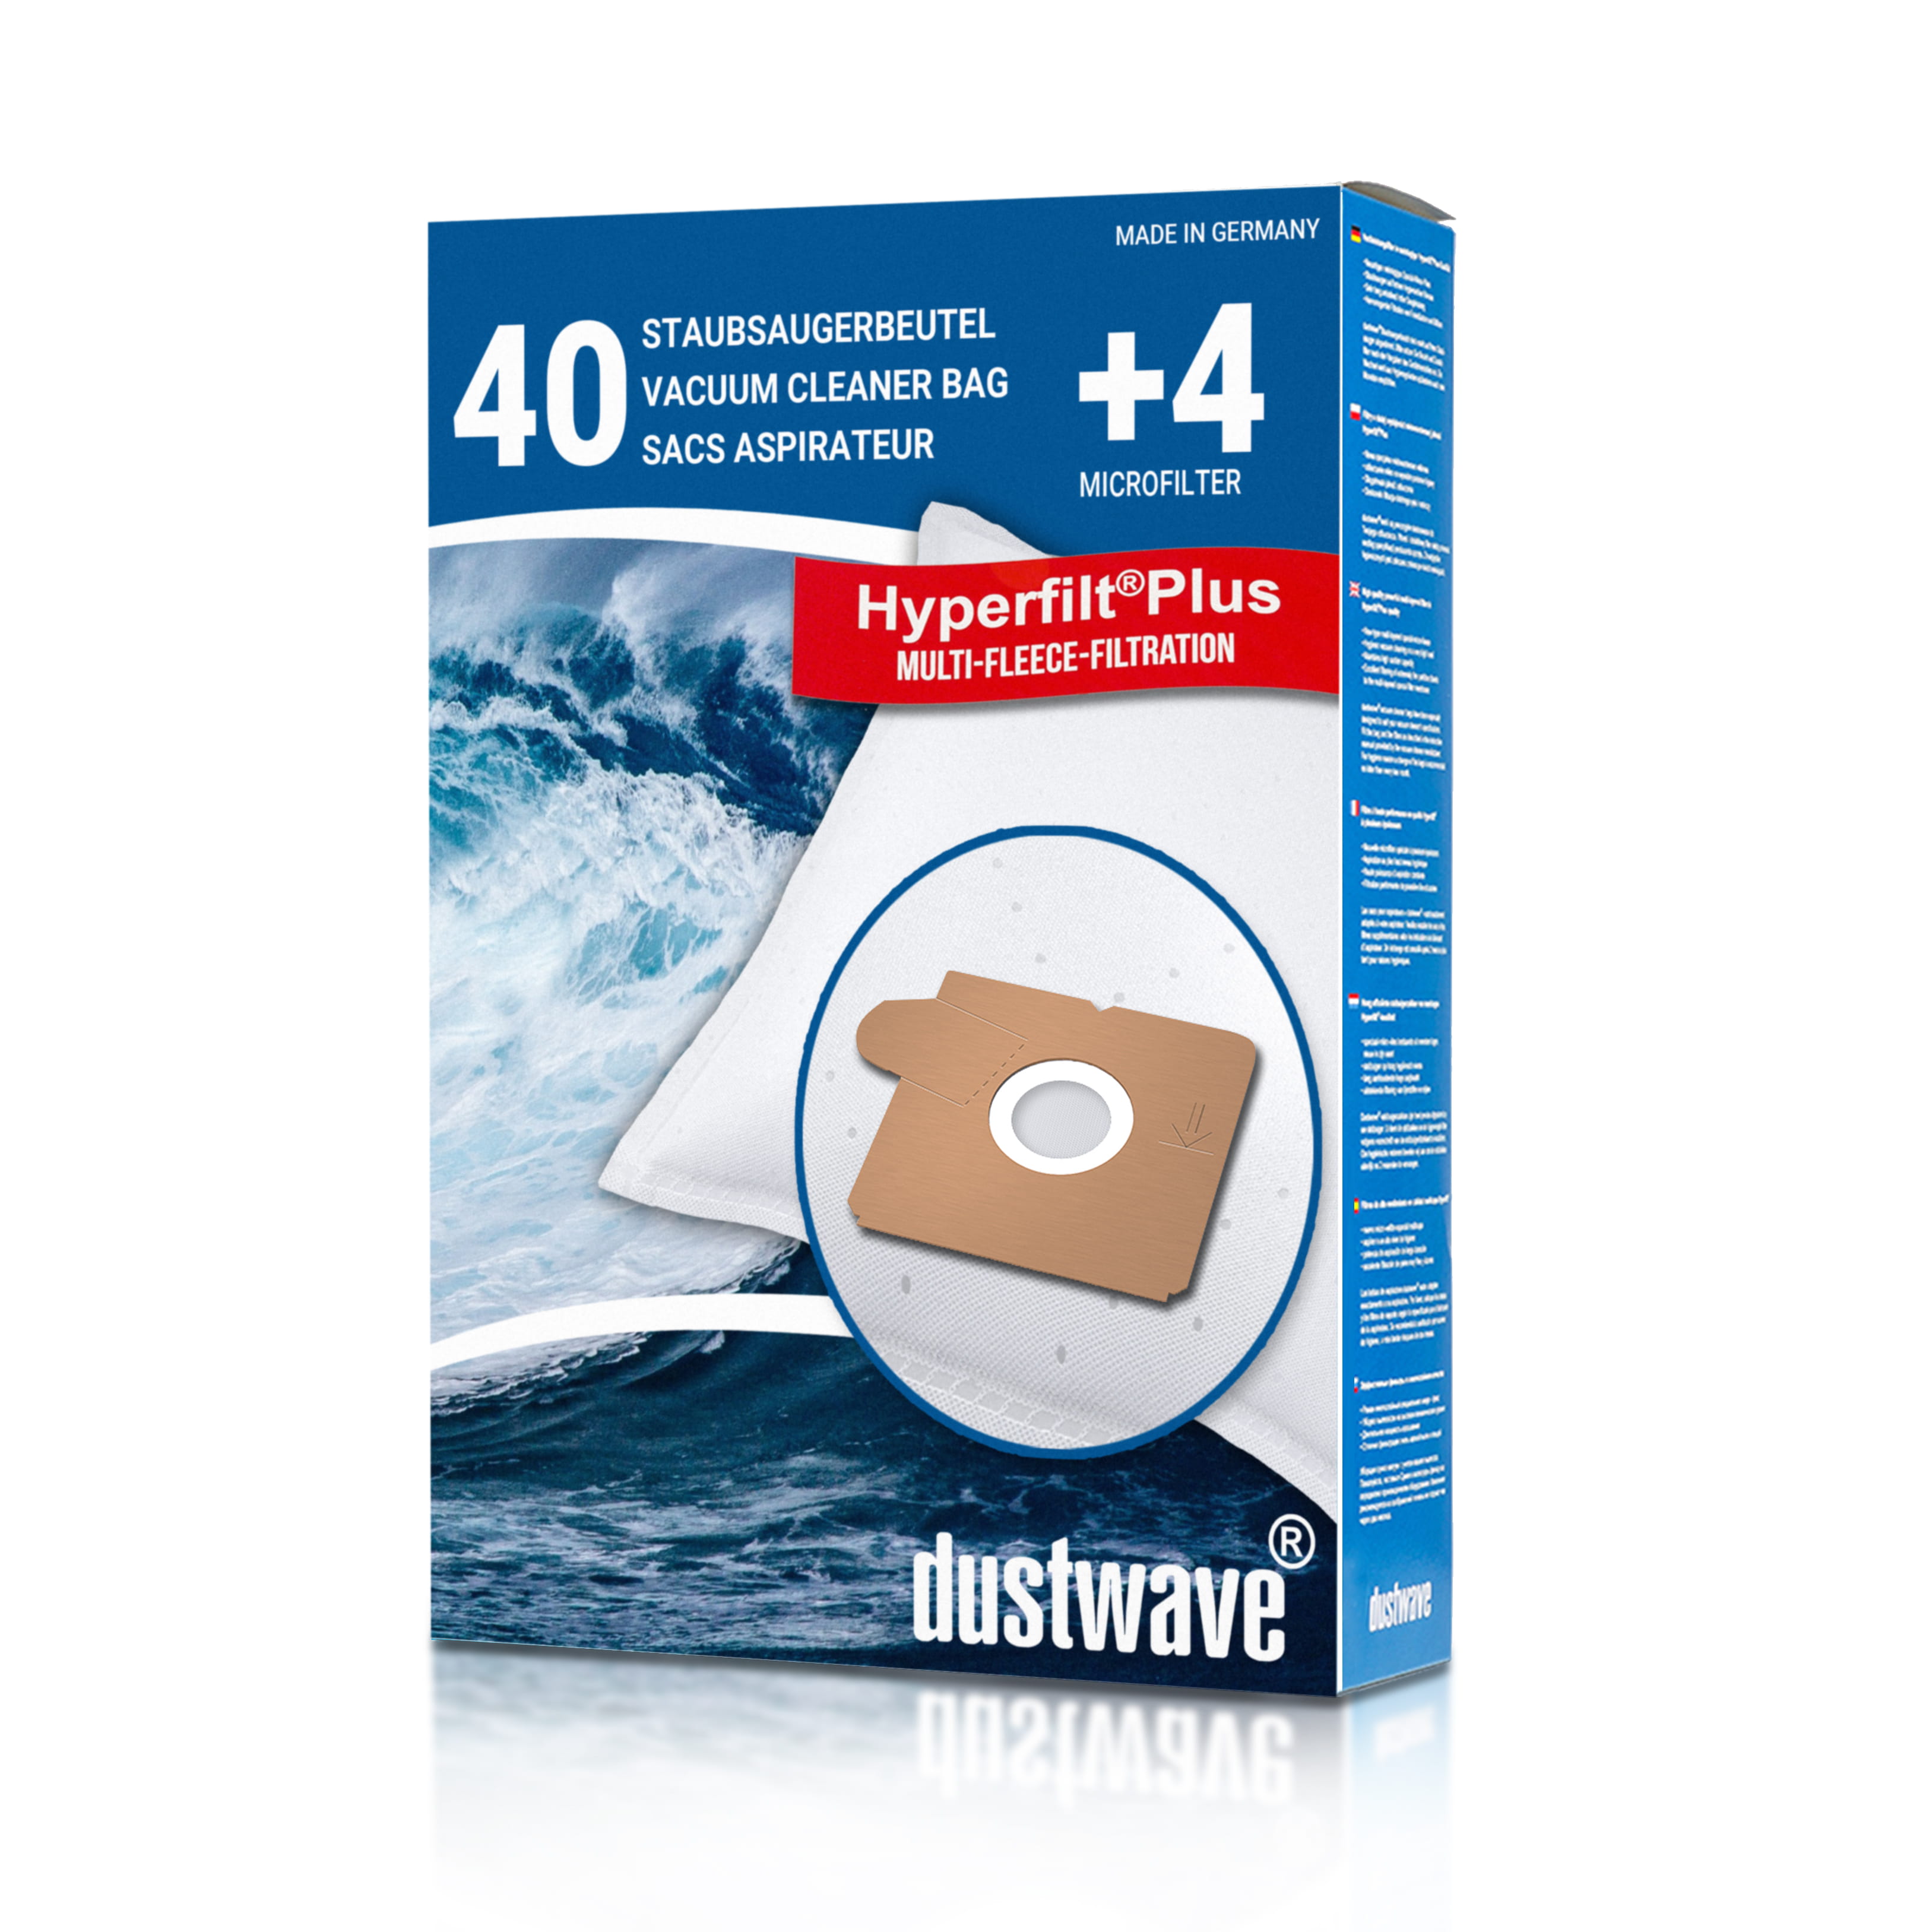 Dustwave® 40 Staubsaugerbeutel für AEG Smart 140.0 - hocheffizient mit Hygieneverschluss - Made in Germany